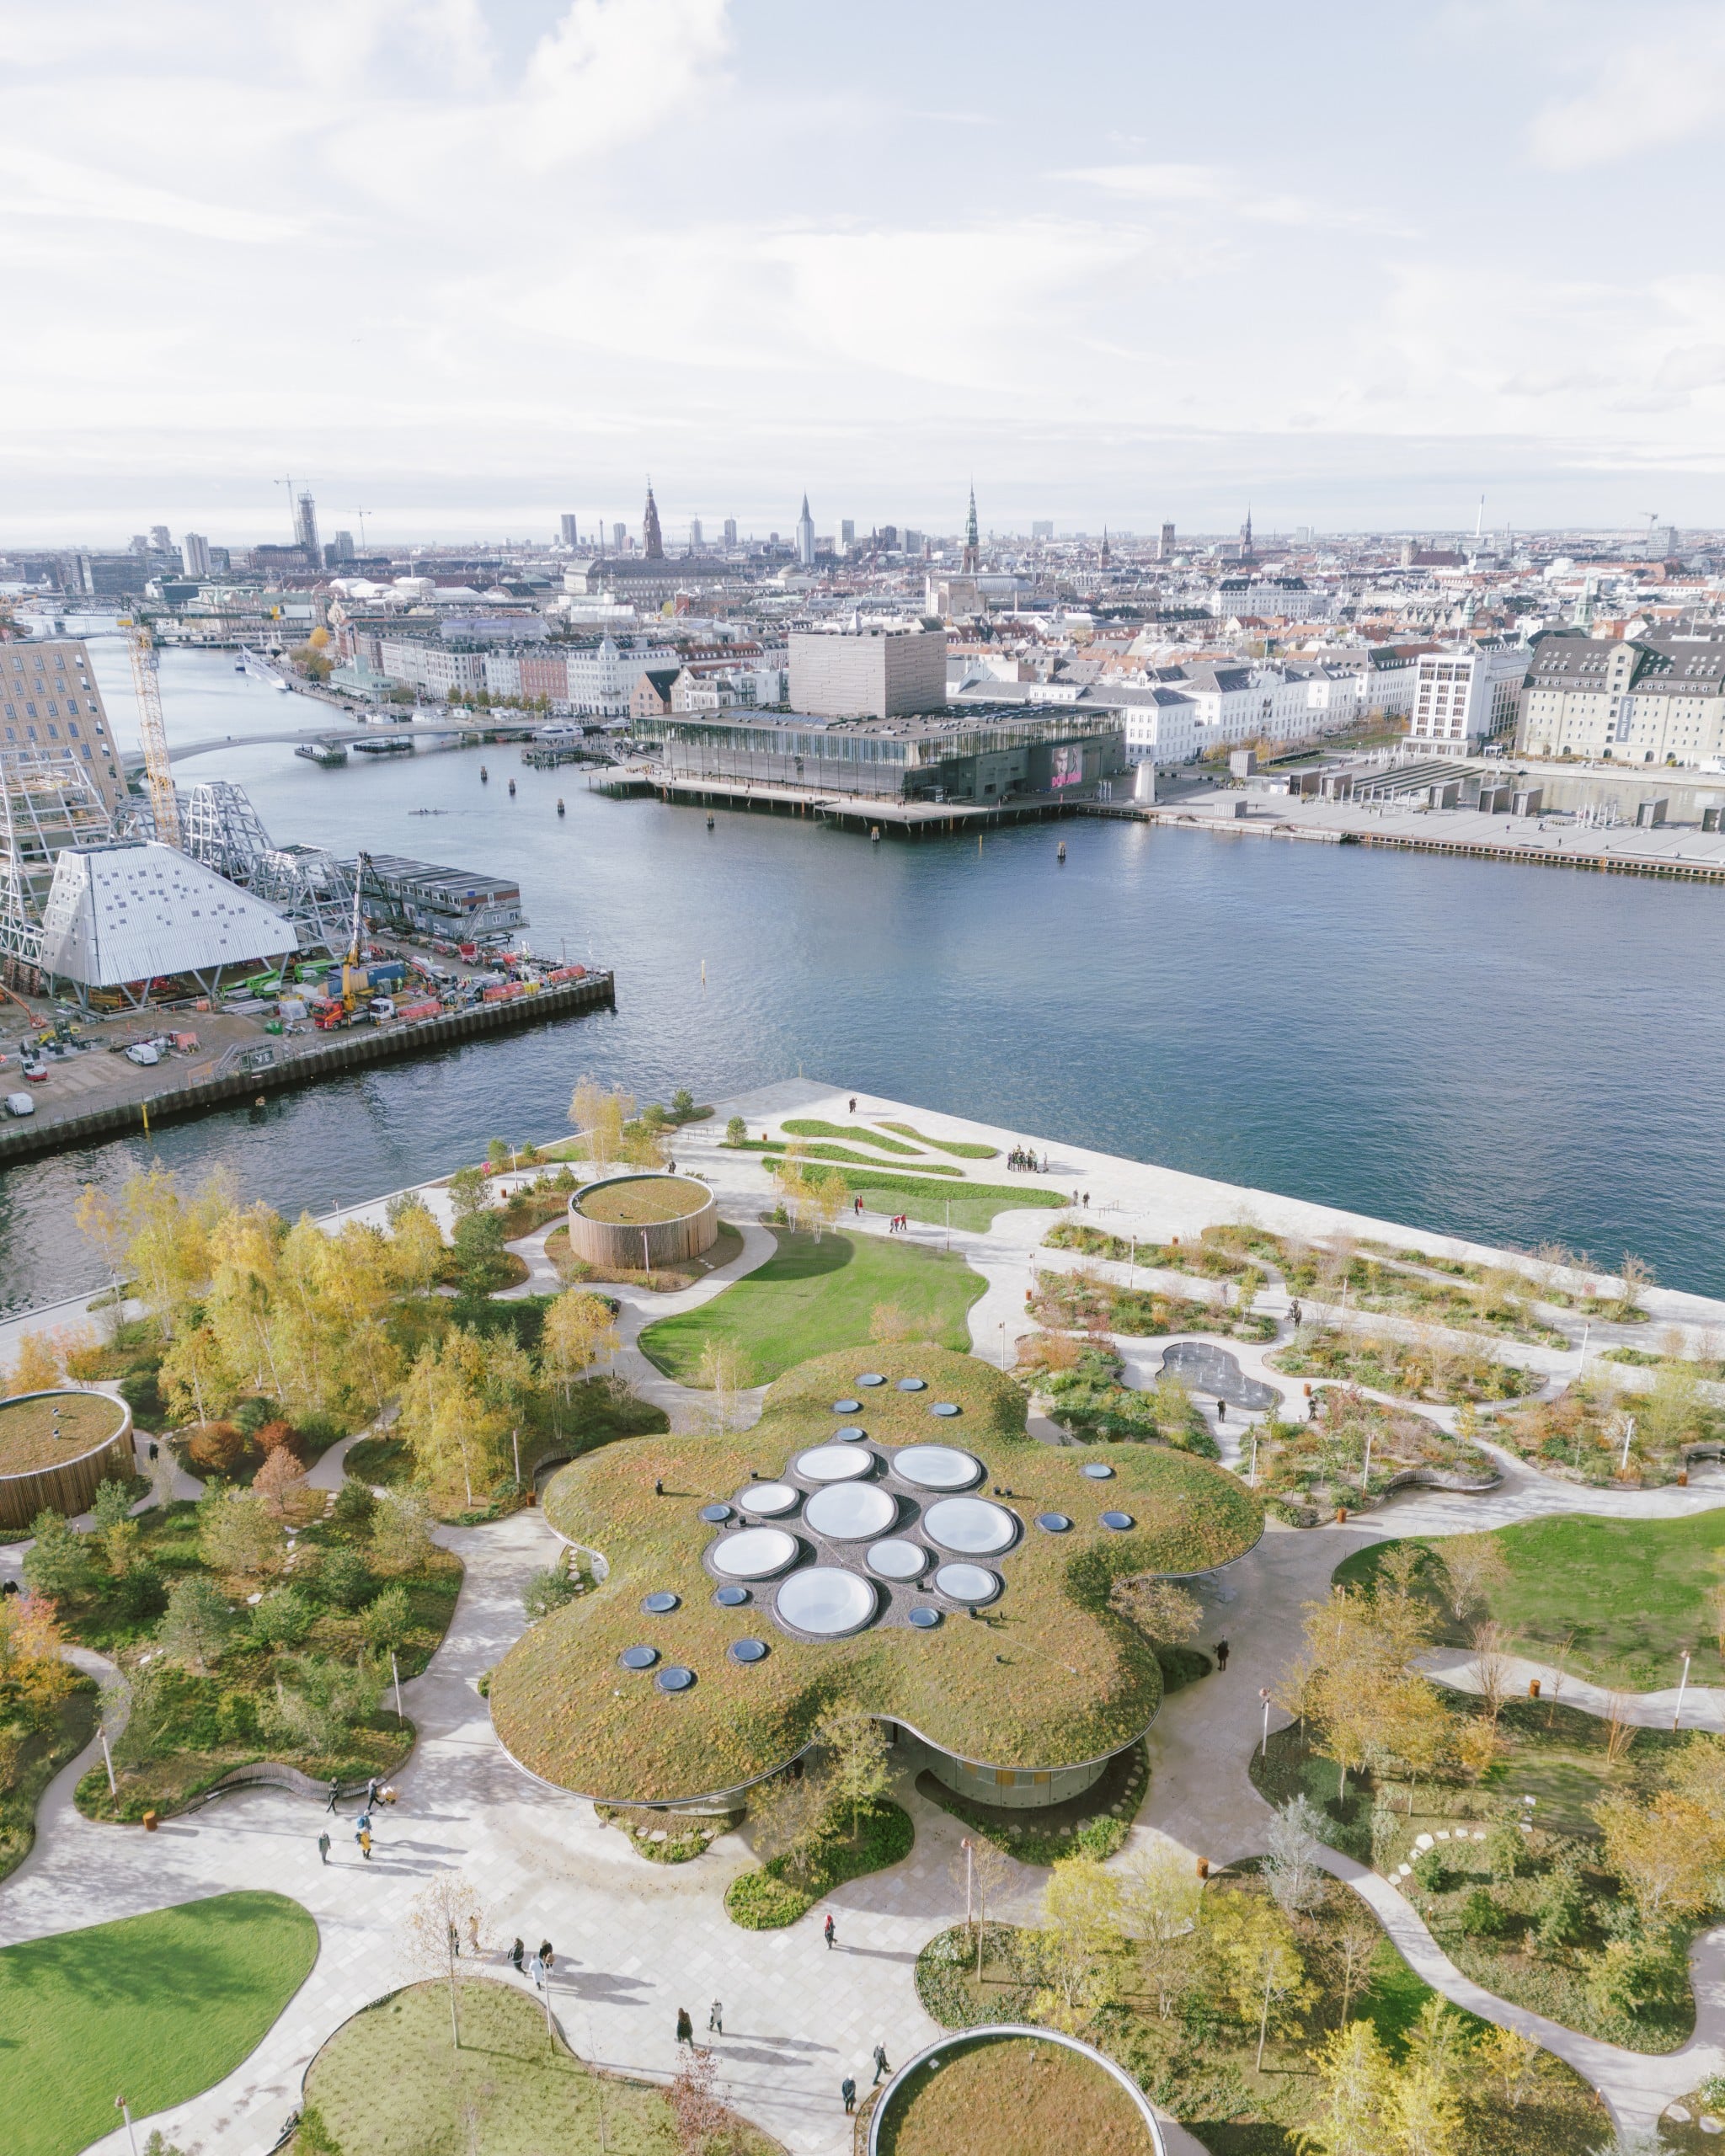 Der Park ist in den Innenhafen Kopenhagens eingebettet. Quelle: Francisco Tirado